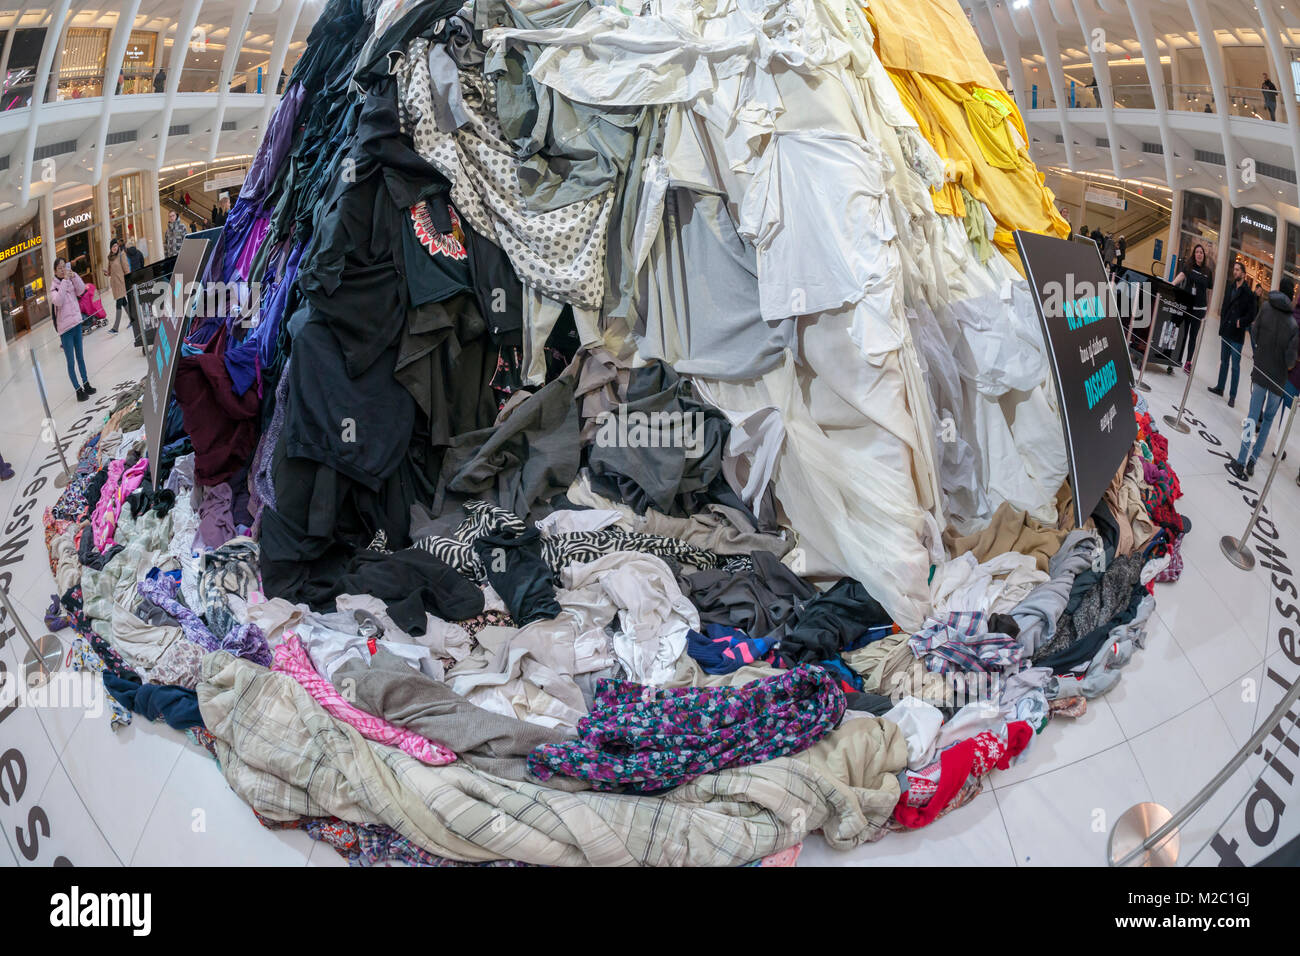 Ein 26 Fuß - hohe Installation besteht aus Tausenden von Artikeln von Kleidung ist in der Oculus von Westfield World Trade Center am Dienstag, 6. Februar 2018 gesehen. Die Veranstaltung von Unilever Deodorants und Sparer, einem Sparsamkeitspeicher gesponsert wird, soll die Aufmerksamkeit auf die Menge der Kleidung zu zeichnen, in Höhe von insgesamt 10,5 Millionen Tonnen jedes Jahr verworfen. Der im Titel Tain-Weniger, Waste-Less 'Es ist Unilever Deodorants, lassen Sie keine Flecken auf der Kleidung fördert, und verlängert dadurch die Lebensdauer Ihrer Kleidung. Außerdem werden die Verbraucher die Möglichkeit, Spenden gebrauchte Kleidung, die auf eine Gemeinnützige recycelt werden. (© Stockfoto